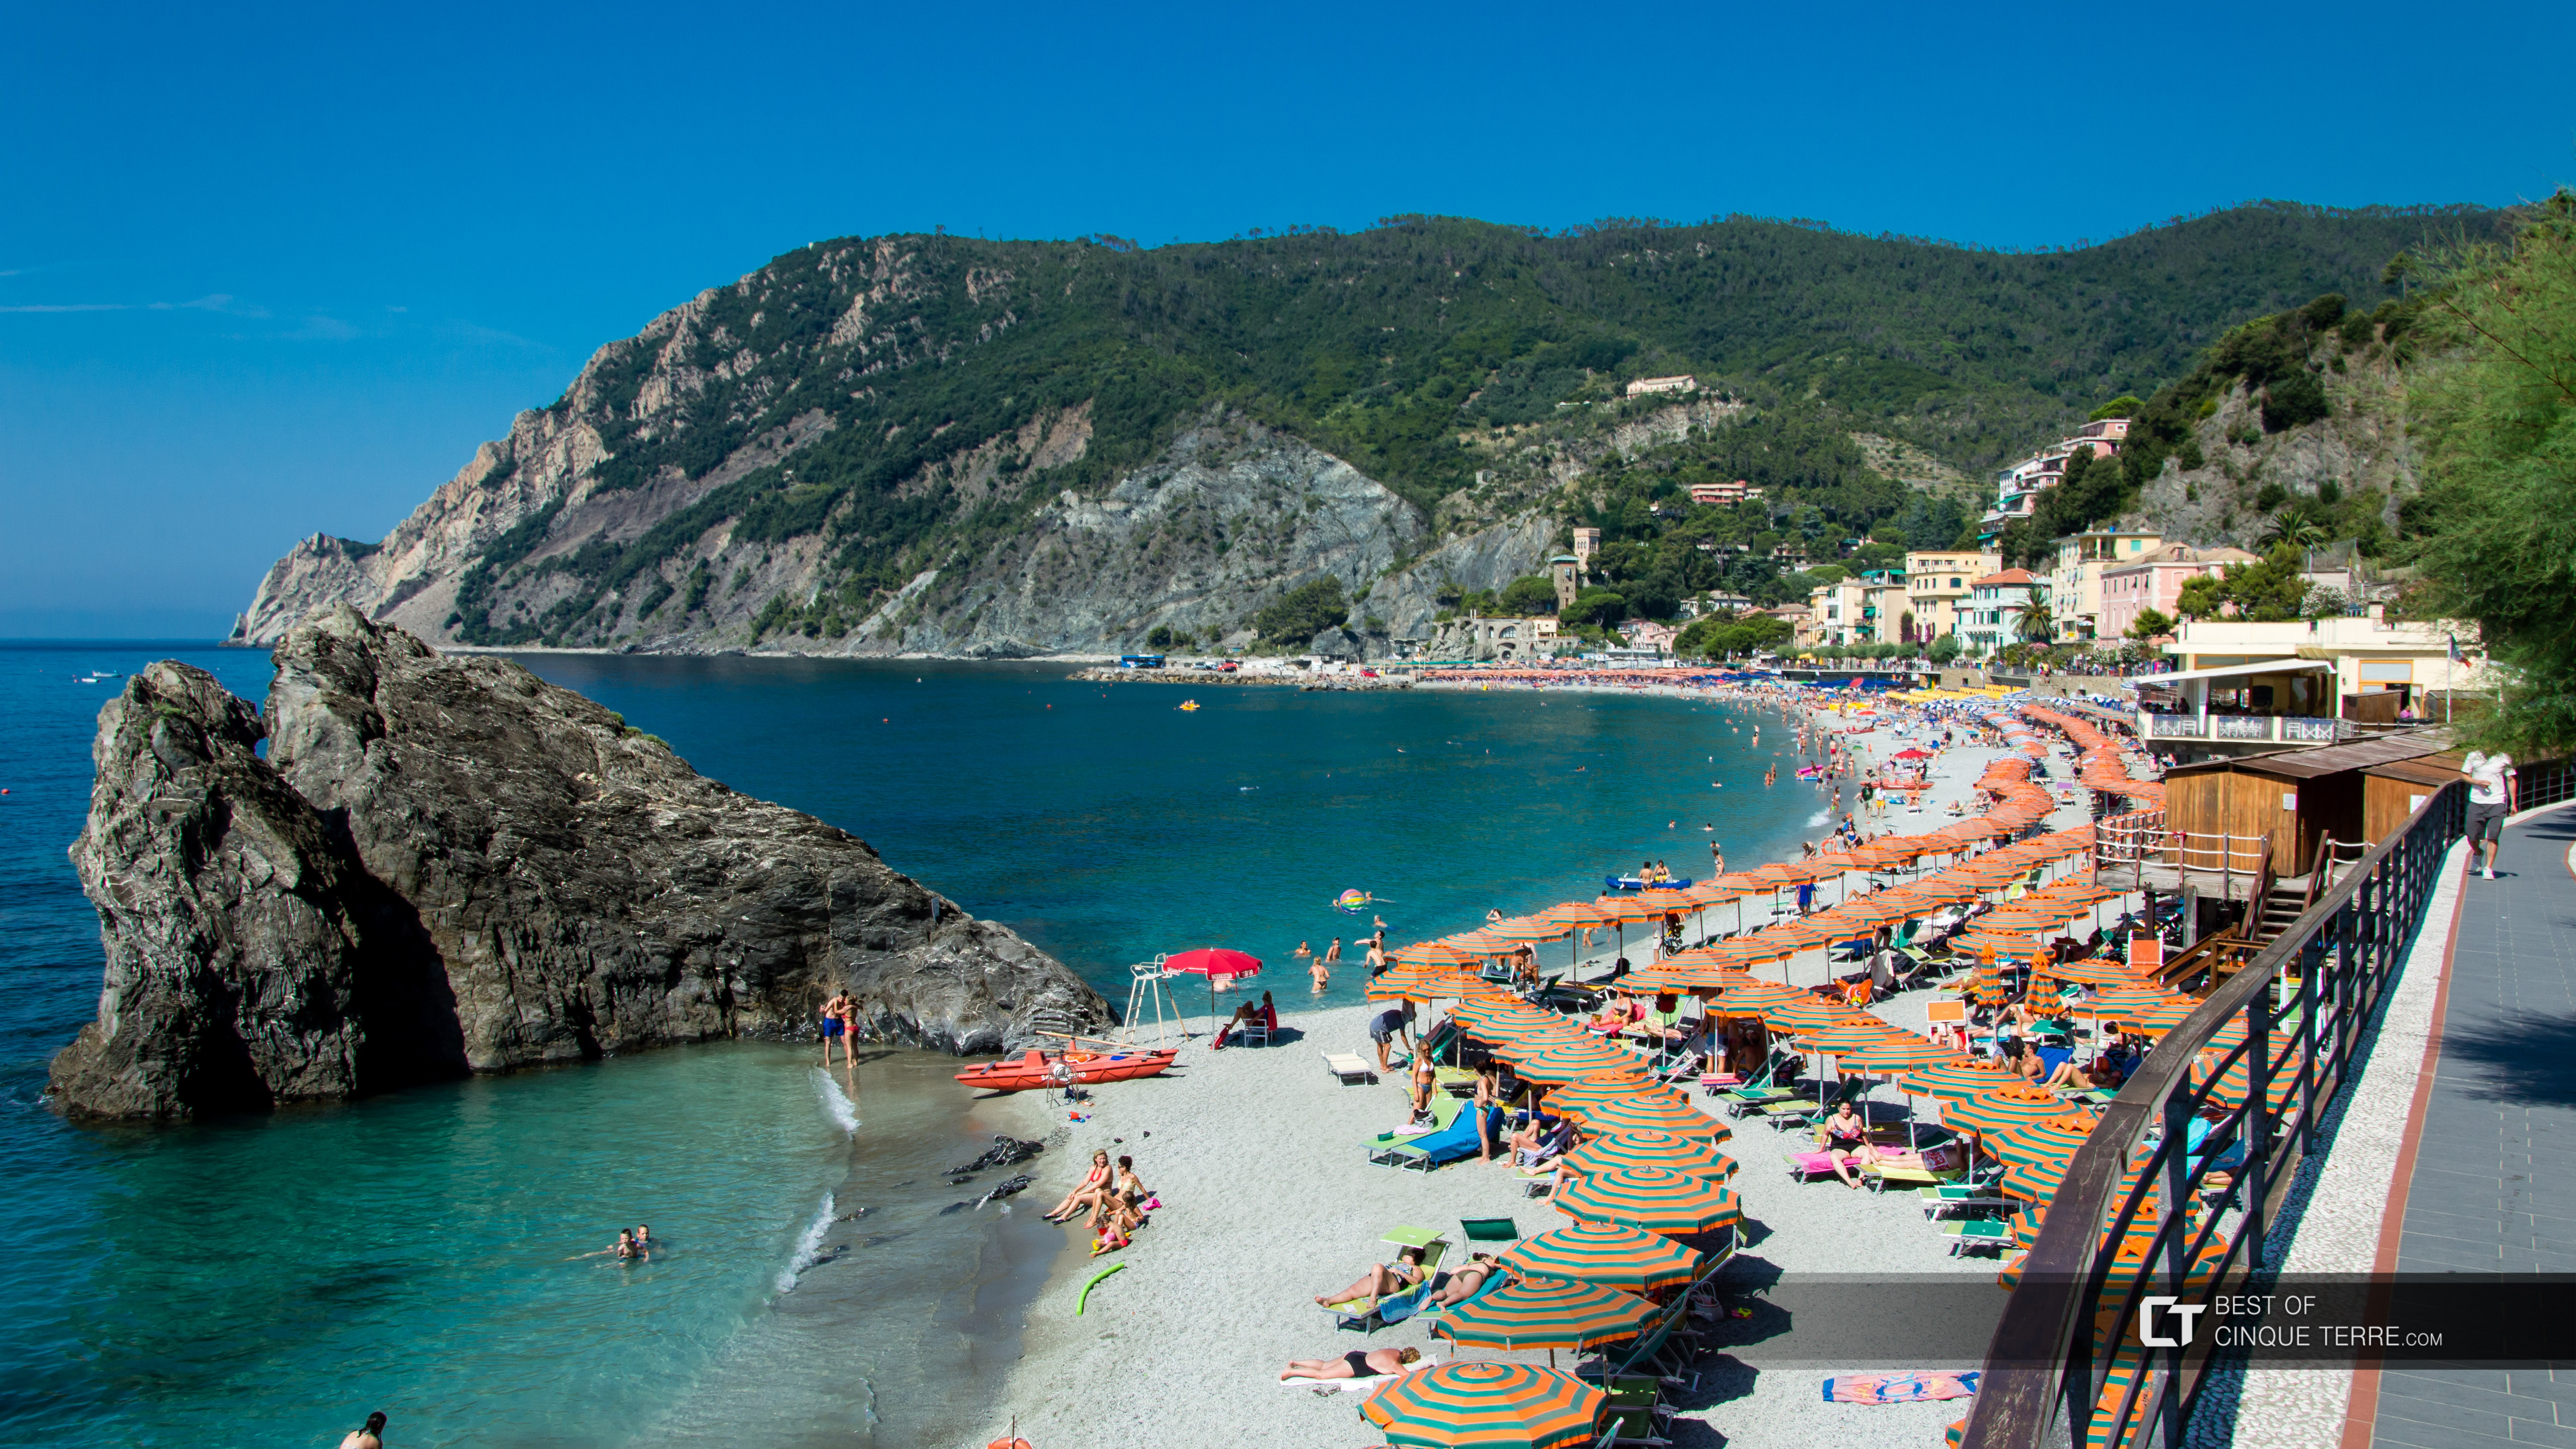 La playa más grande de las Cinco Tierras: Fegina, Monterosso al Mare, Cinque Terre, Italia